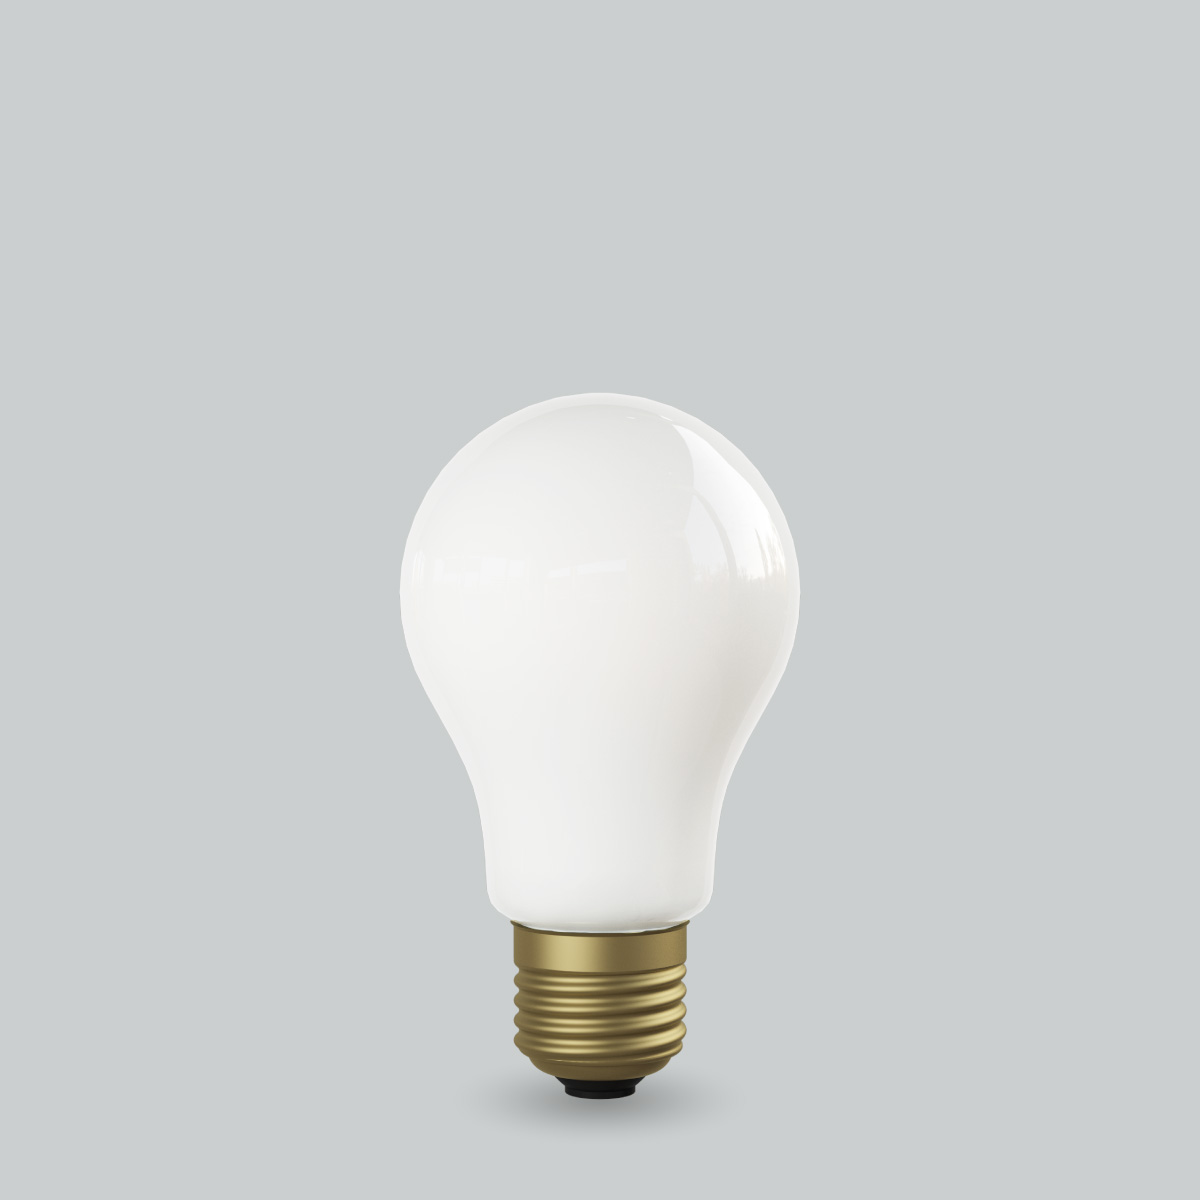 フィラメントLED電球「Siphon」 The Bulb LDF56D ホワイト ザ・バルブ 